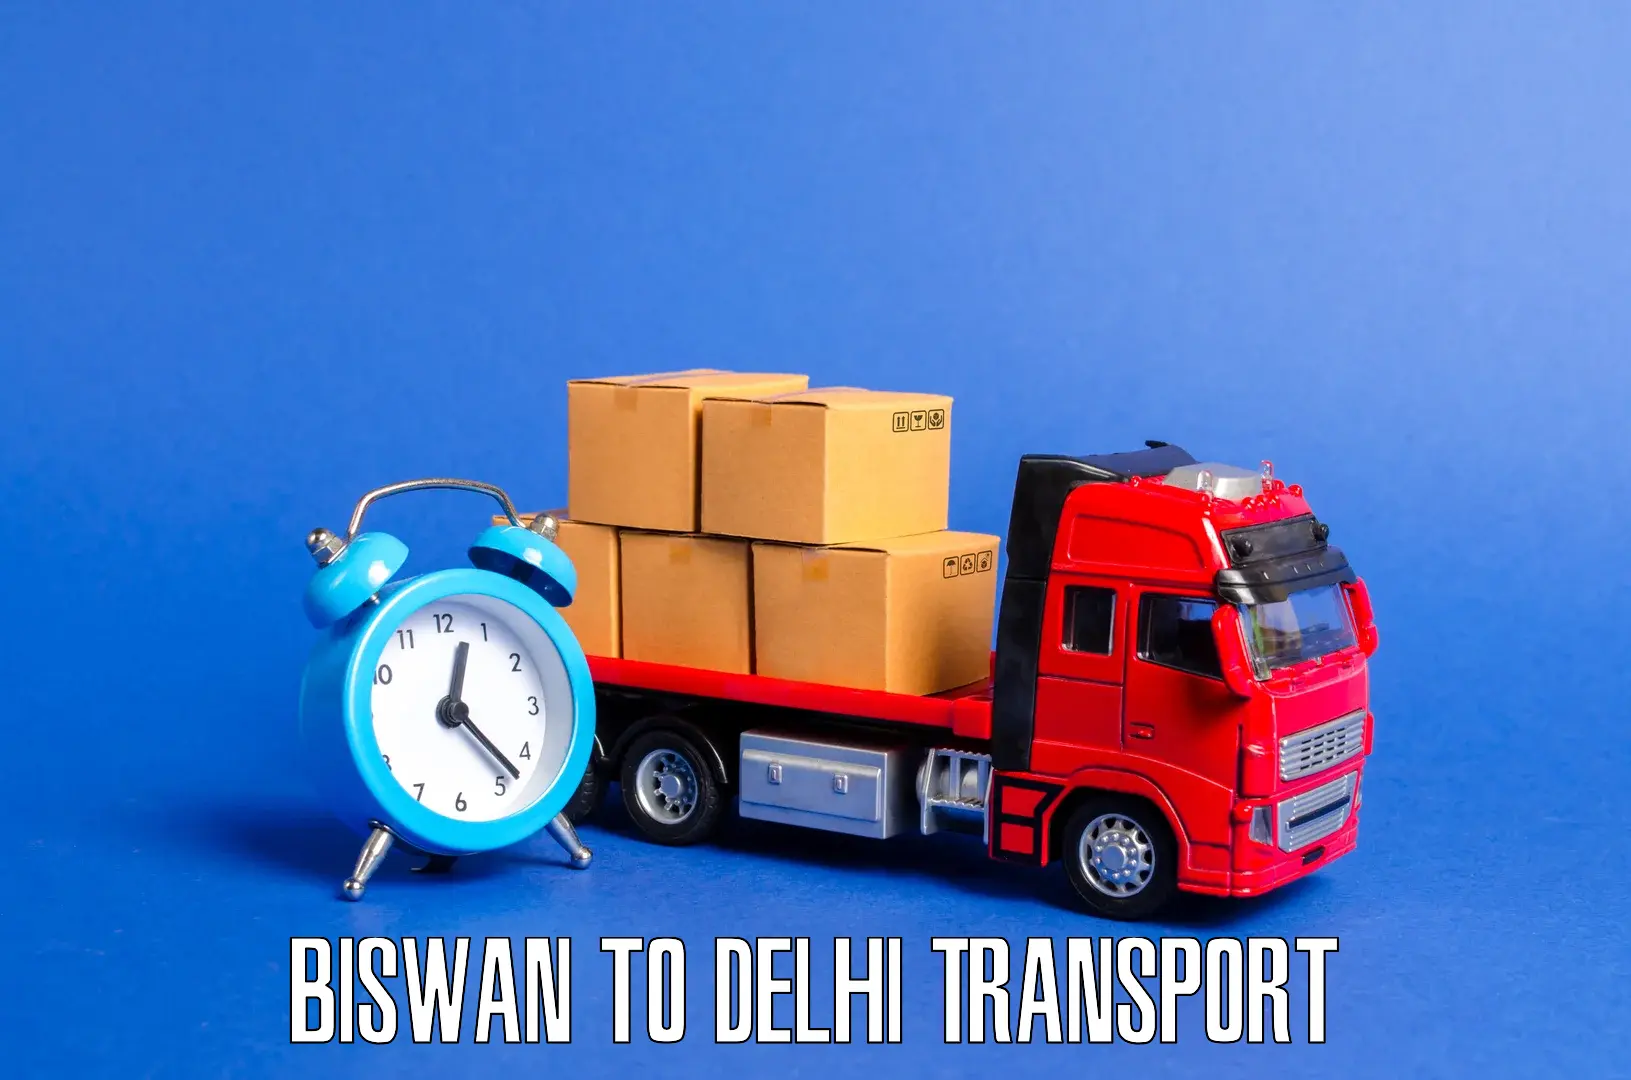 Sending bike to another city Biswan to IIT Delhi